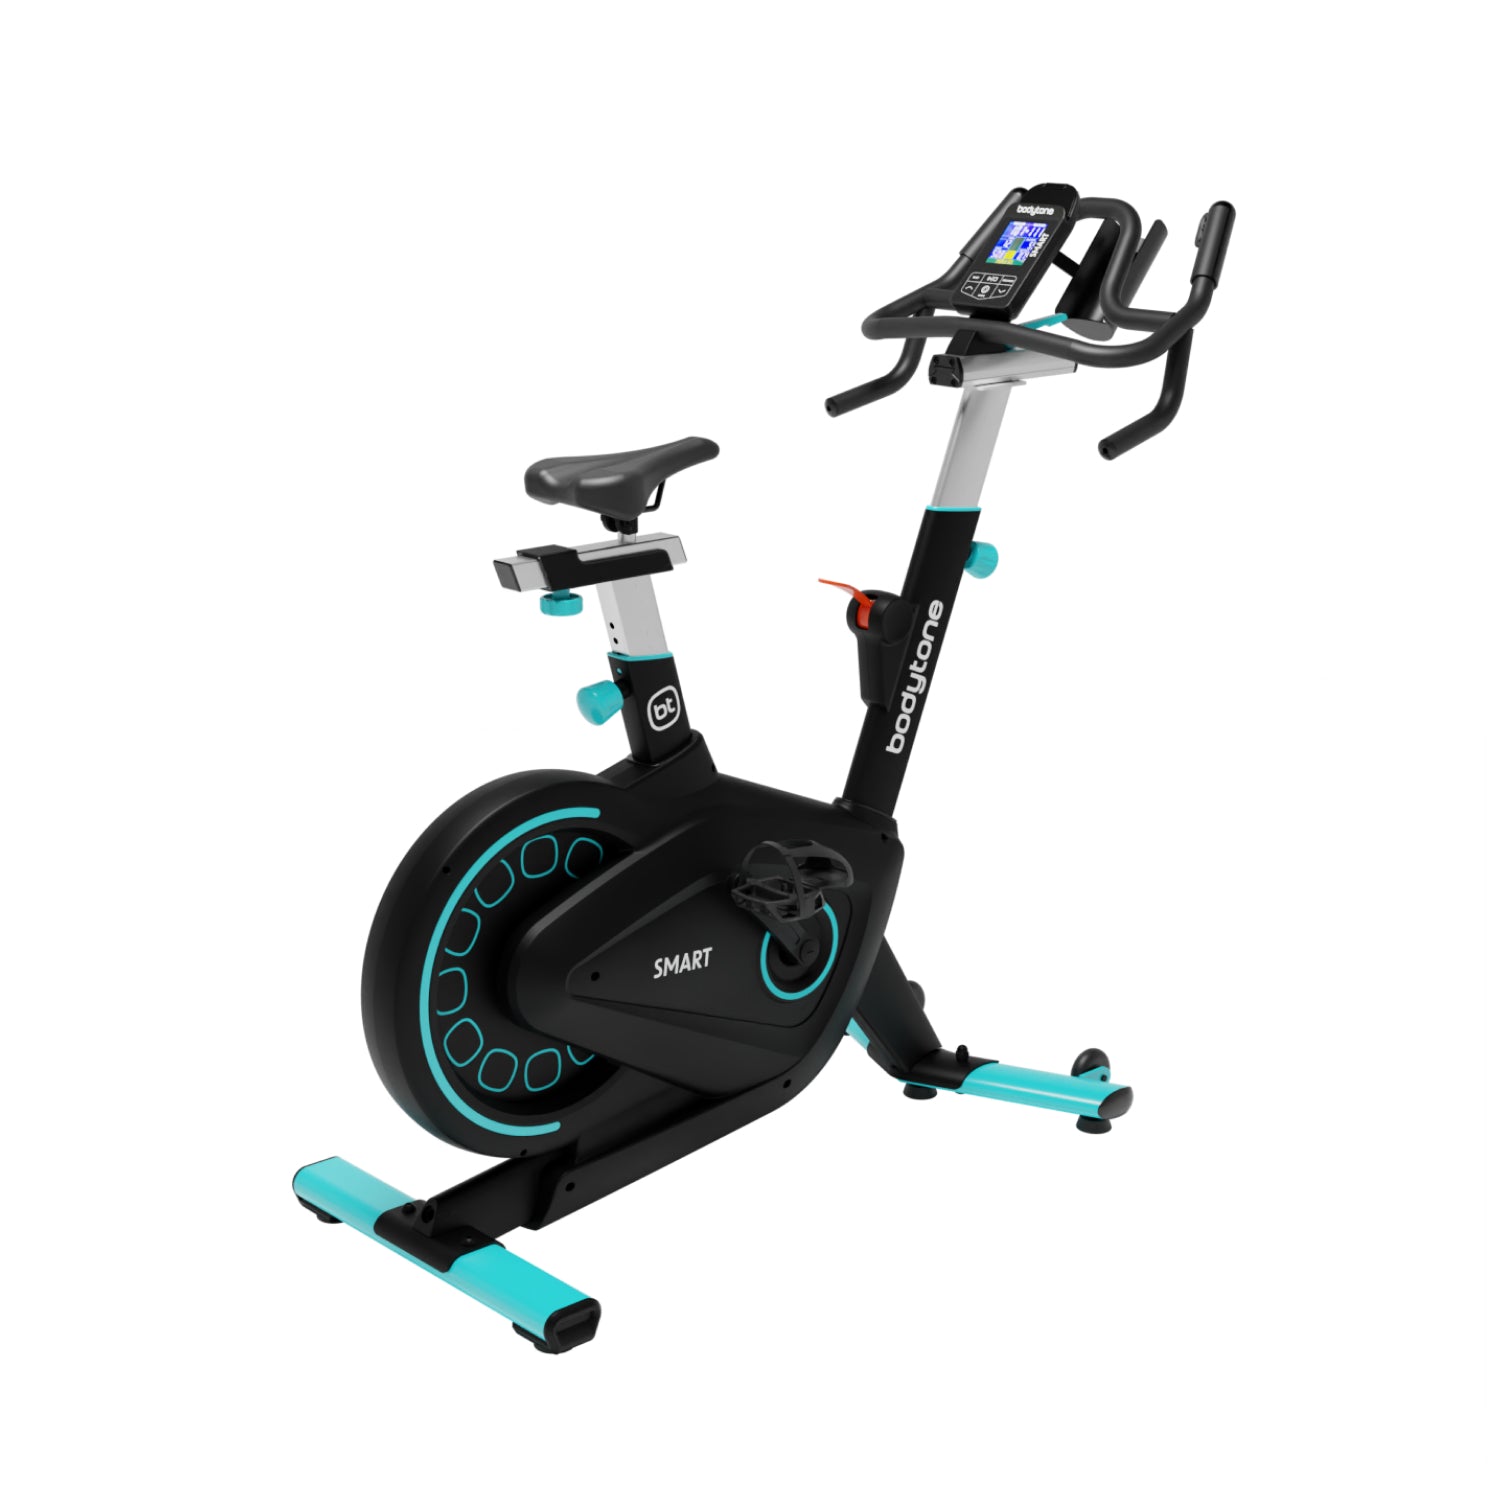  Máquinas de Cardio: Deportes y Actividades al Aire Libre:  Exercise Bikes, Step Machines, Treadmills y más